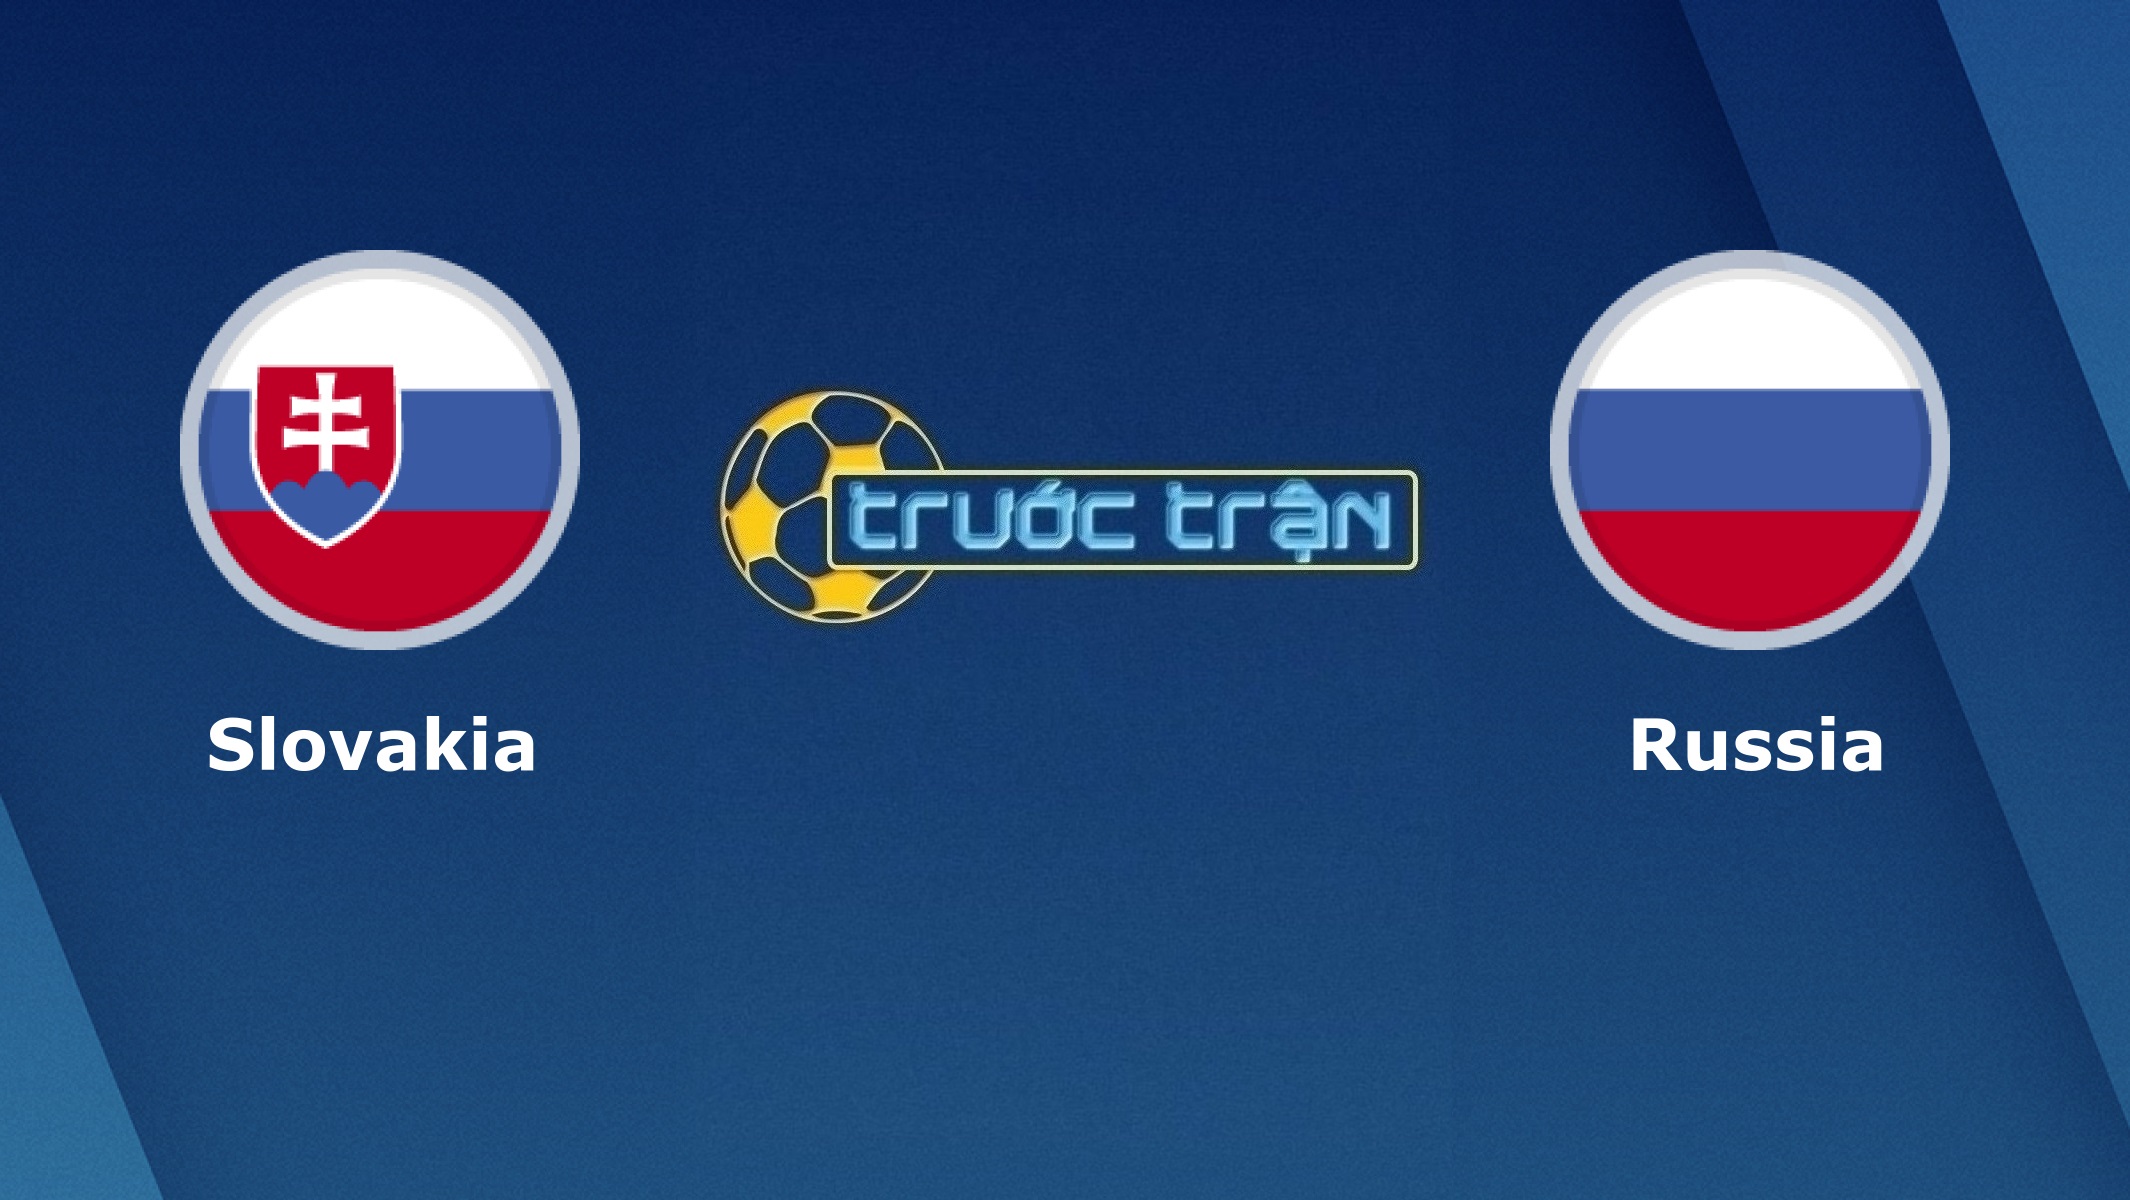 Slovakia vs Nga – Tip kèo bóng đá hôm nay – 01h45 31/03/2021